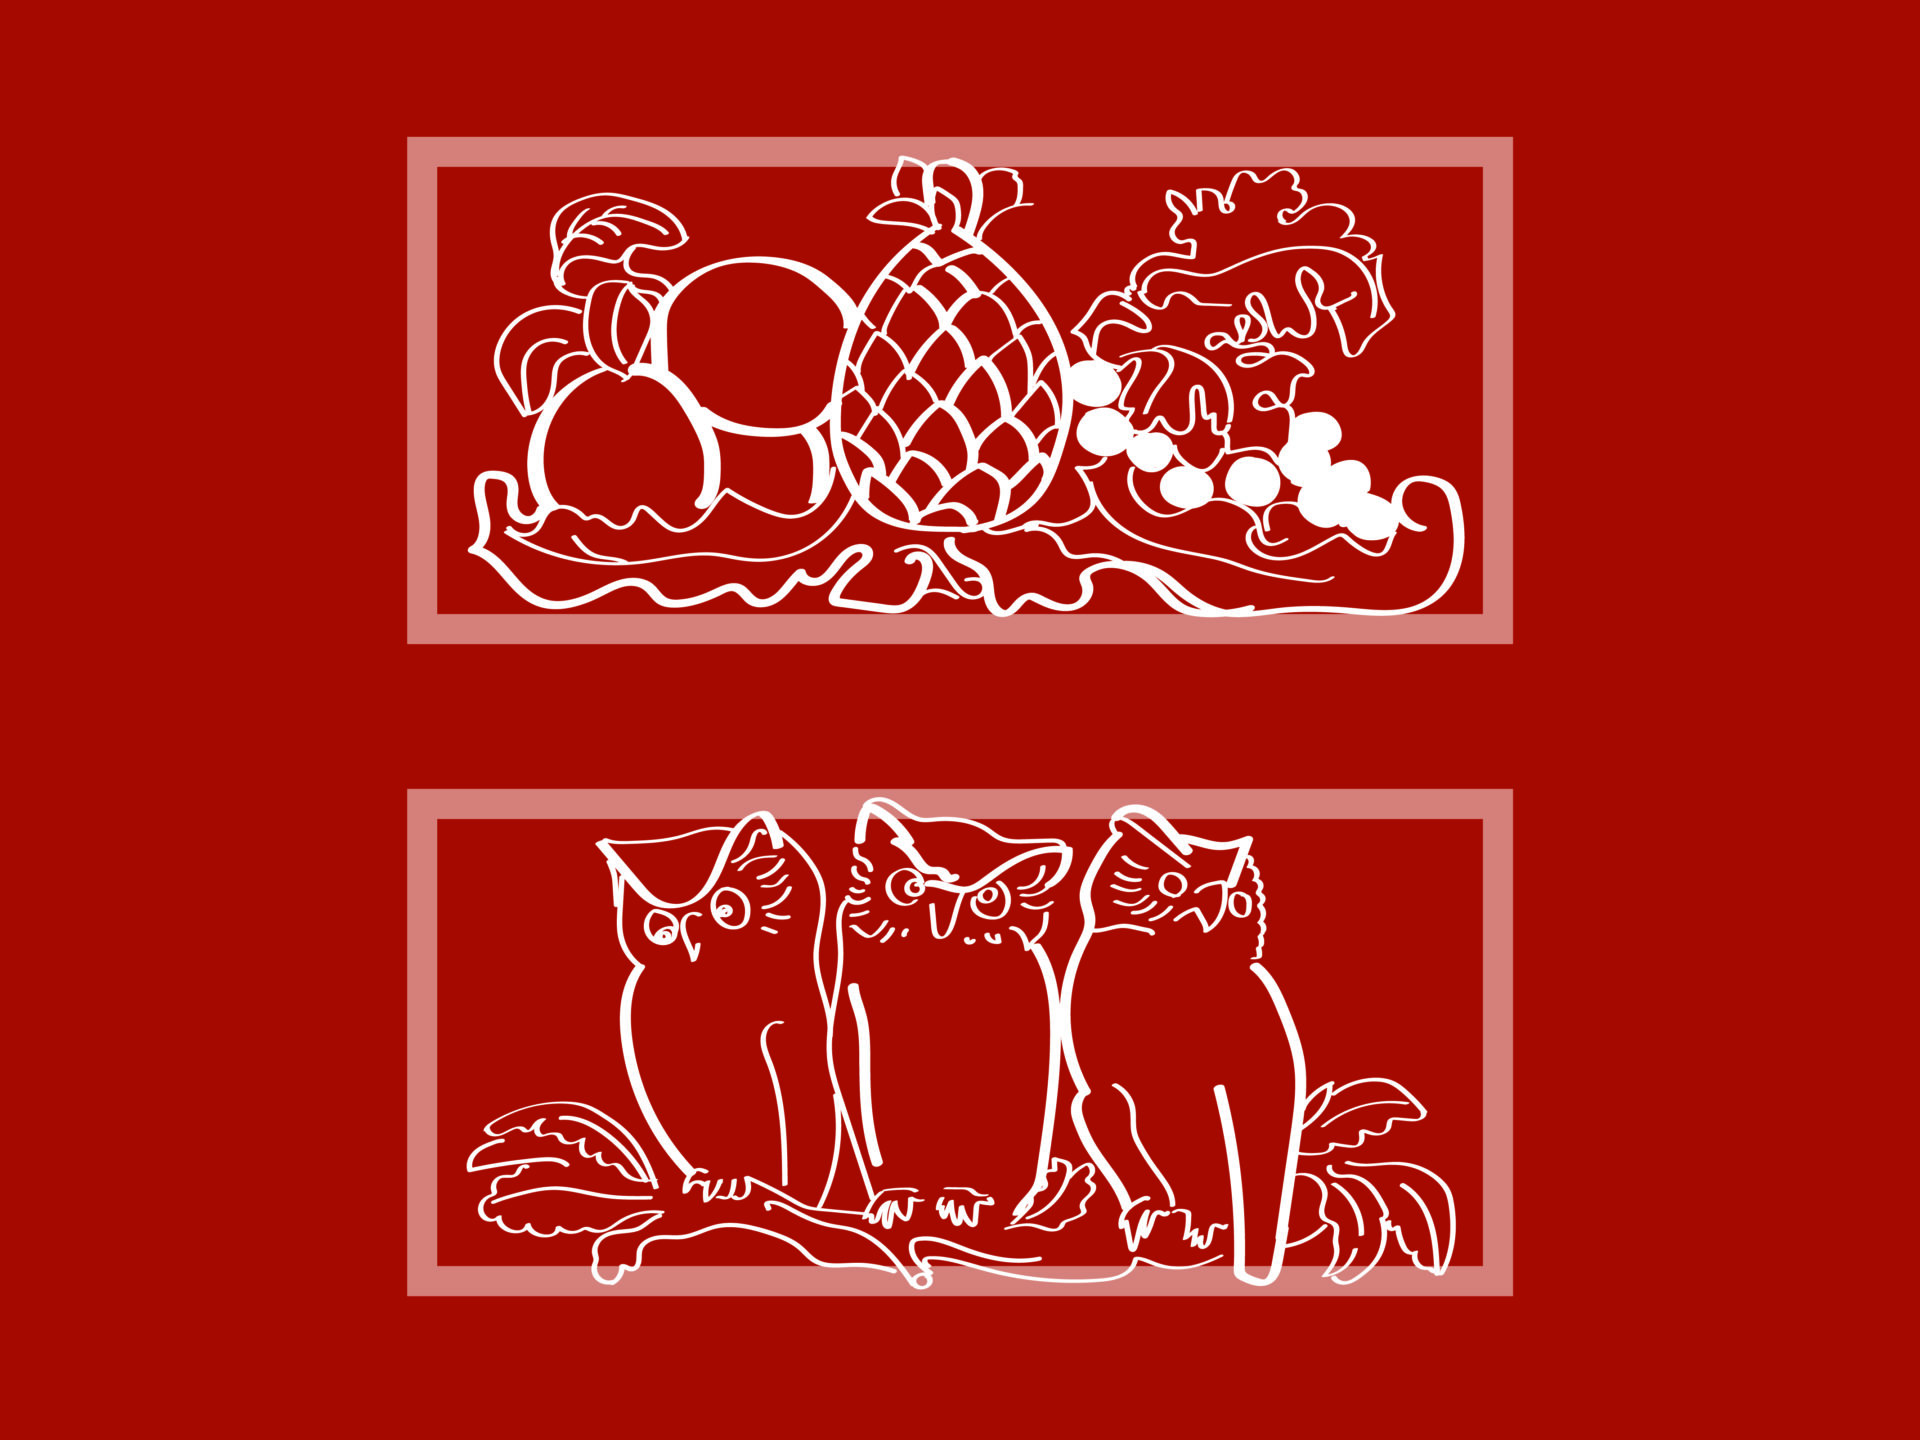 Na czerwonym tle dwa białe rysunki ujęte w prostokątne ramki, jeden pod drugim. Na pierwszym owoce rozłożone na fantazyjnie wywiniętym liściu, na drugim trzy sowy siedzące na gałęzi.